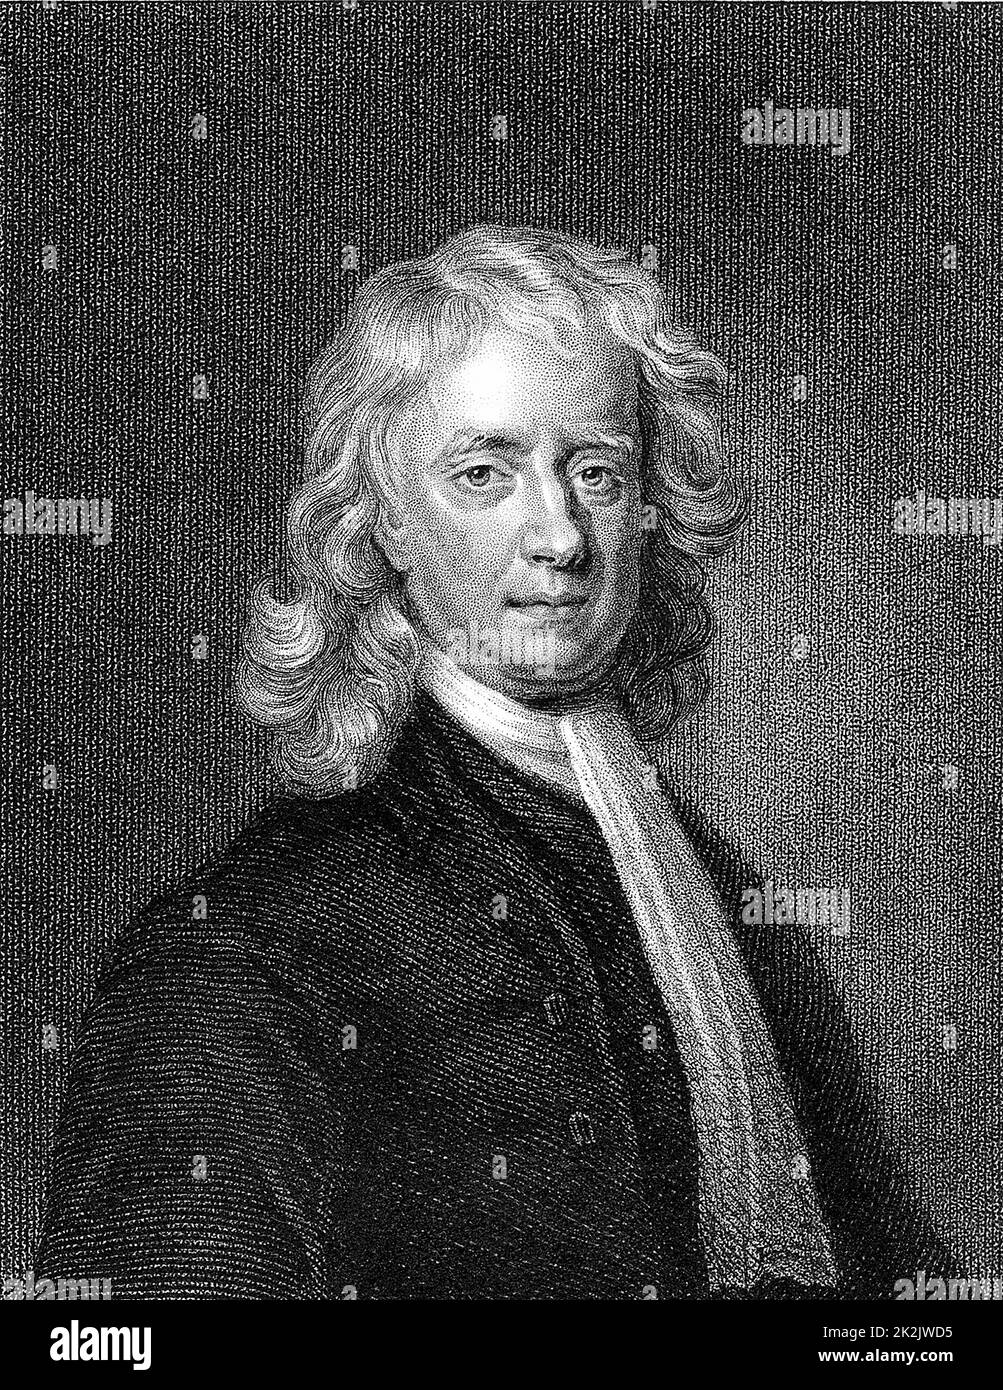 Isaac Newton (1642-1727) englischer Mathematiker und Physiker. Gravur nach dem Porträt von Enoch Seeman Stockfoto